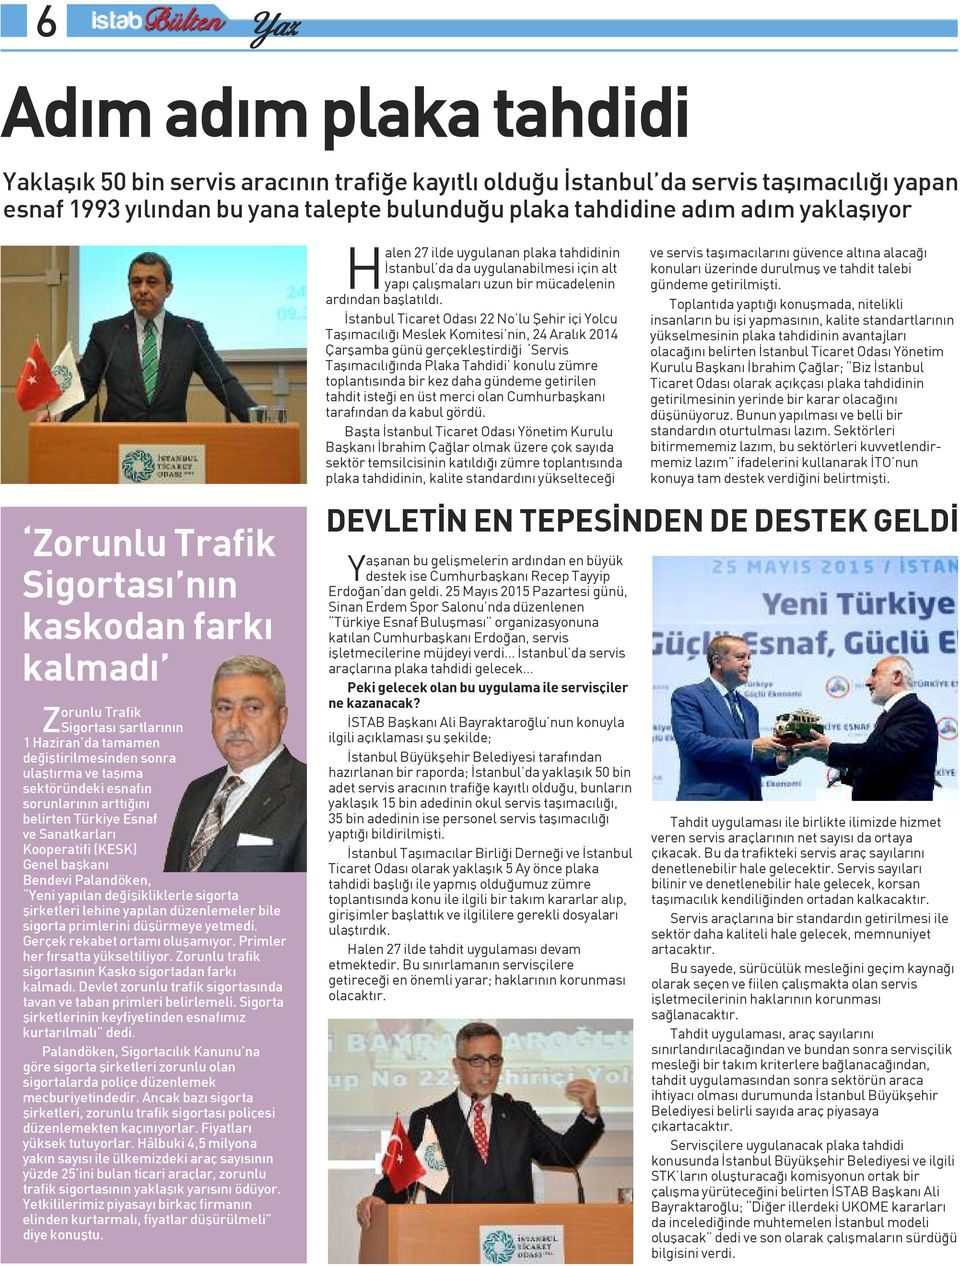 İstanbul Ticaret Odası 22 No lu Şehir içi Yolcu Taşımacılığı Meslek Komitesi nin, 24 Aralık 2014 Çarşamba günü gerçekleştirdiği Servis Taşımacılığında Plaka Tahdidi konulu zümre toplantısında bir kez